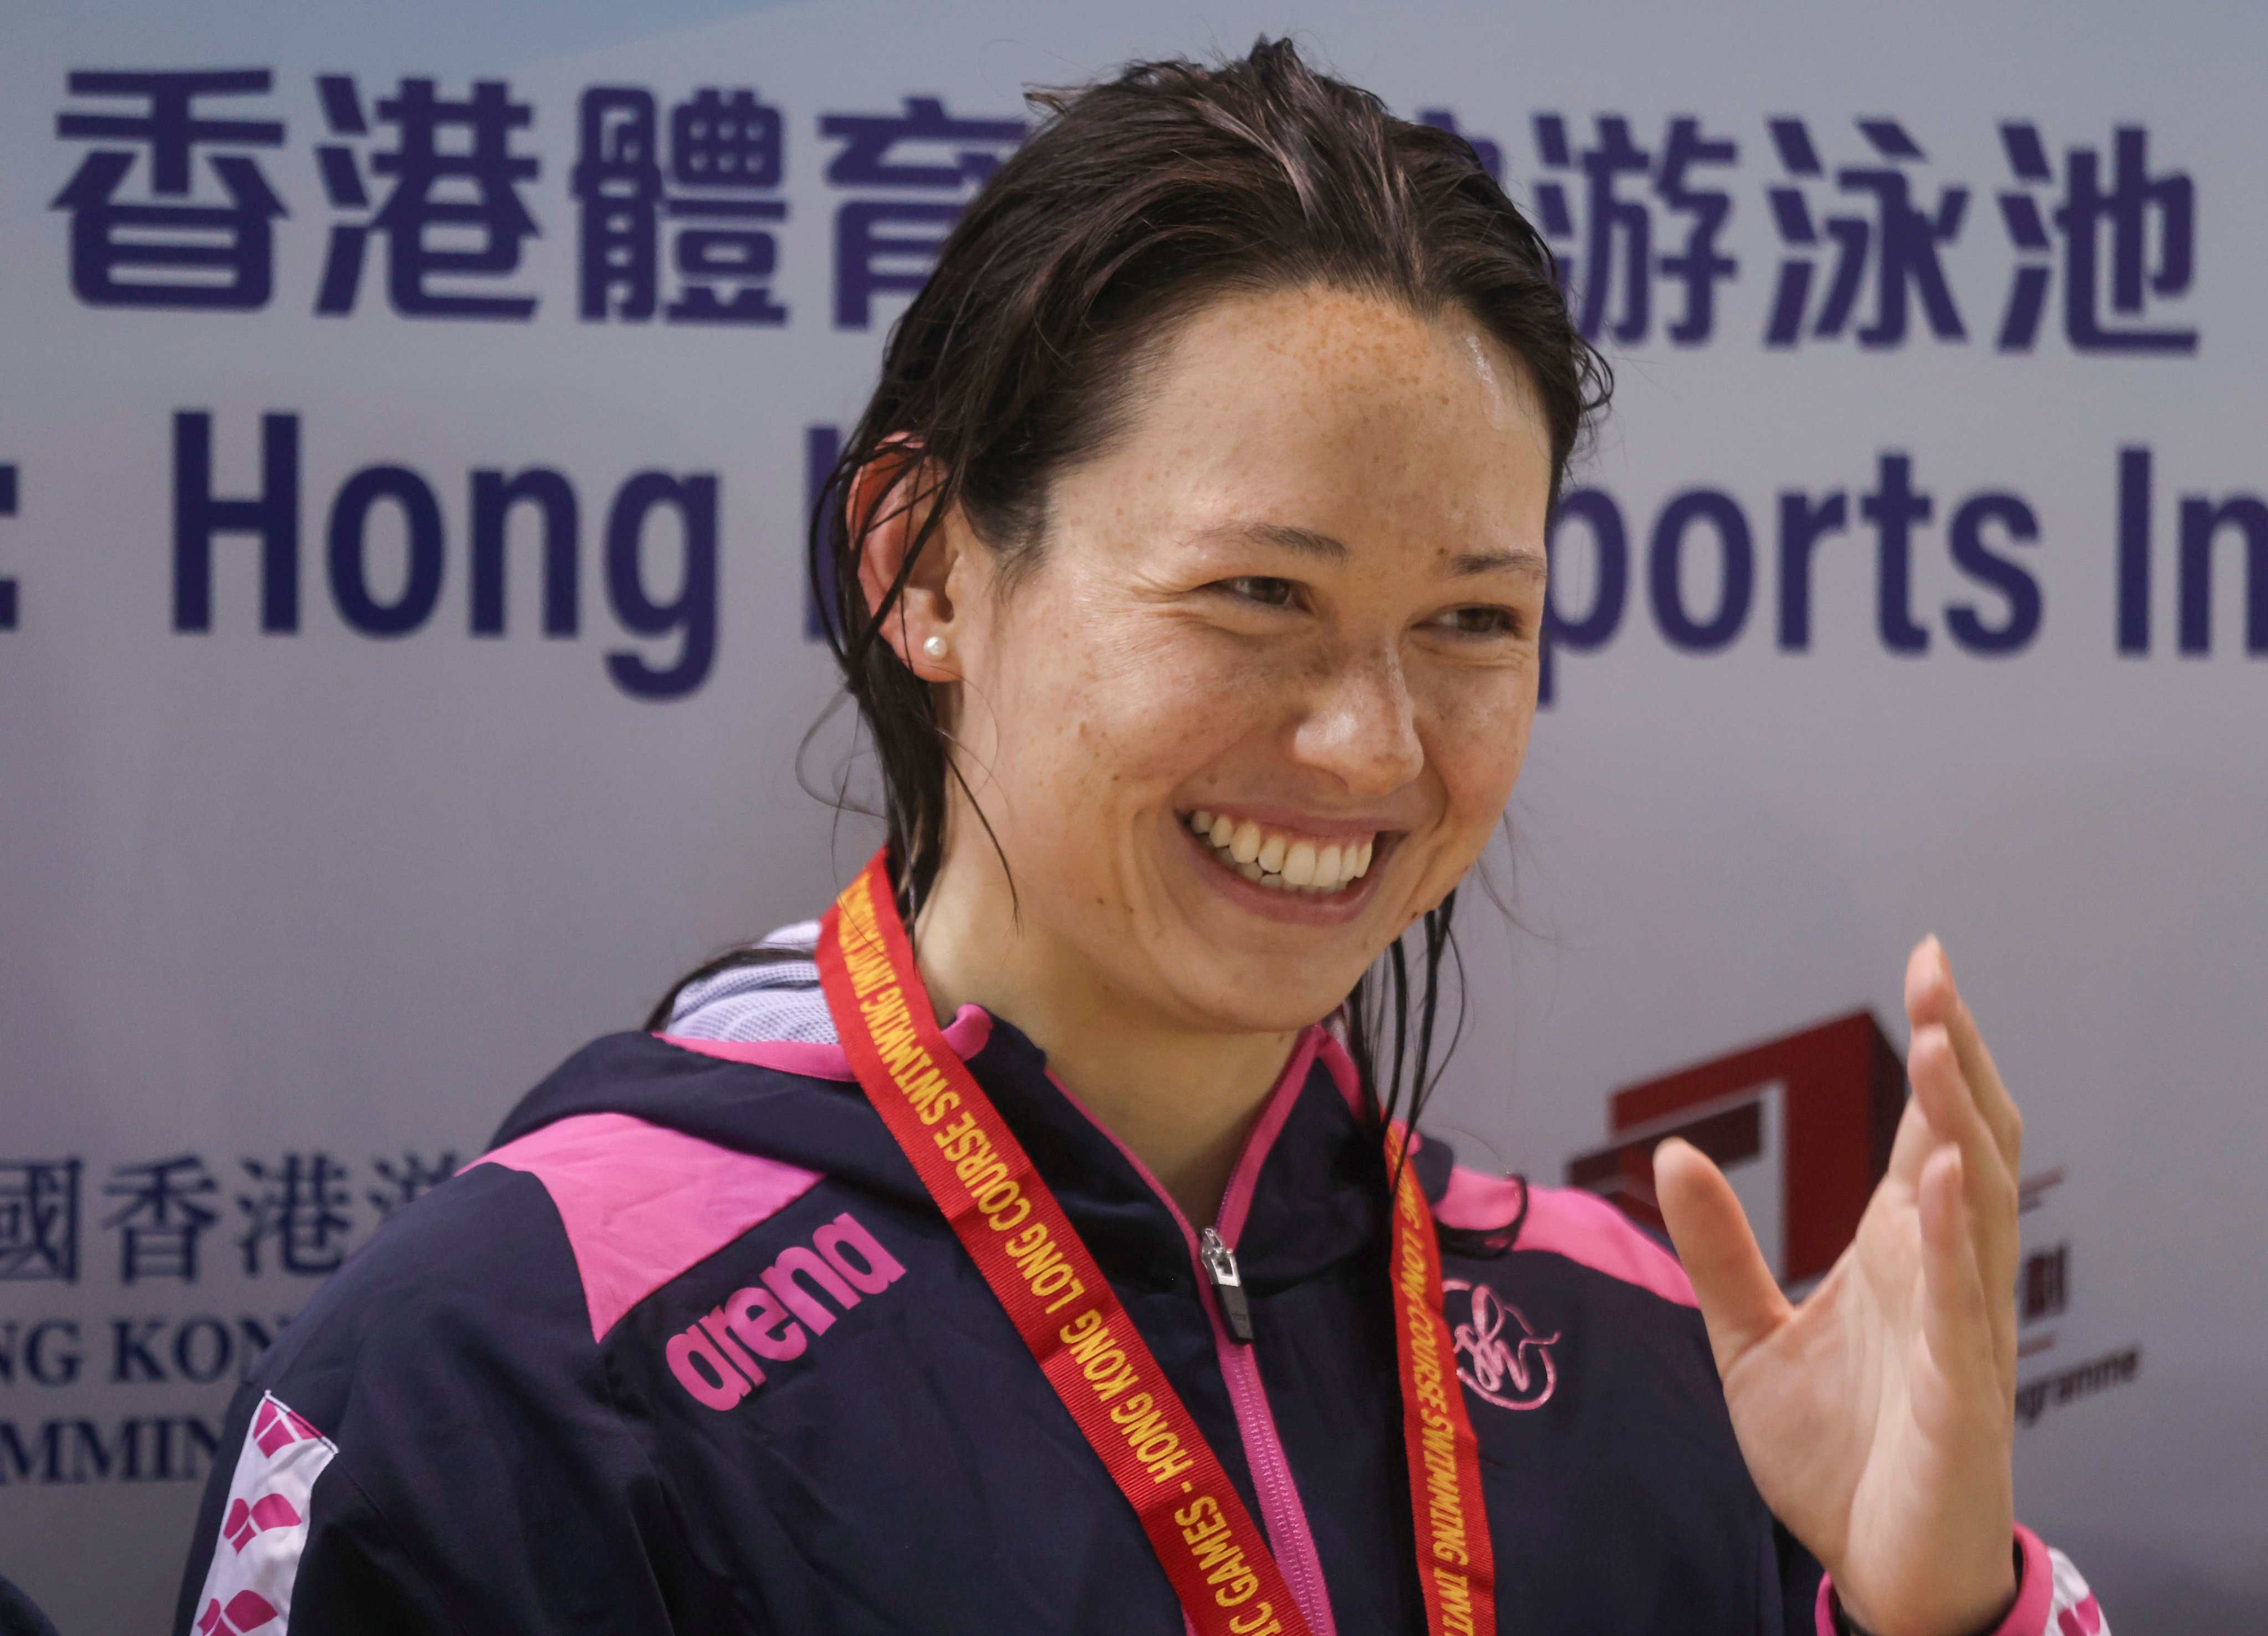 Siobhan Haughey said she wanted to avoid swimming on Sunday at the Hong Kong trial. Photo: Jonathan Wong